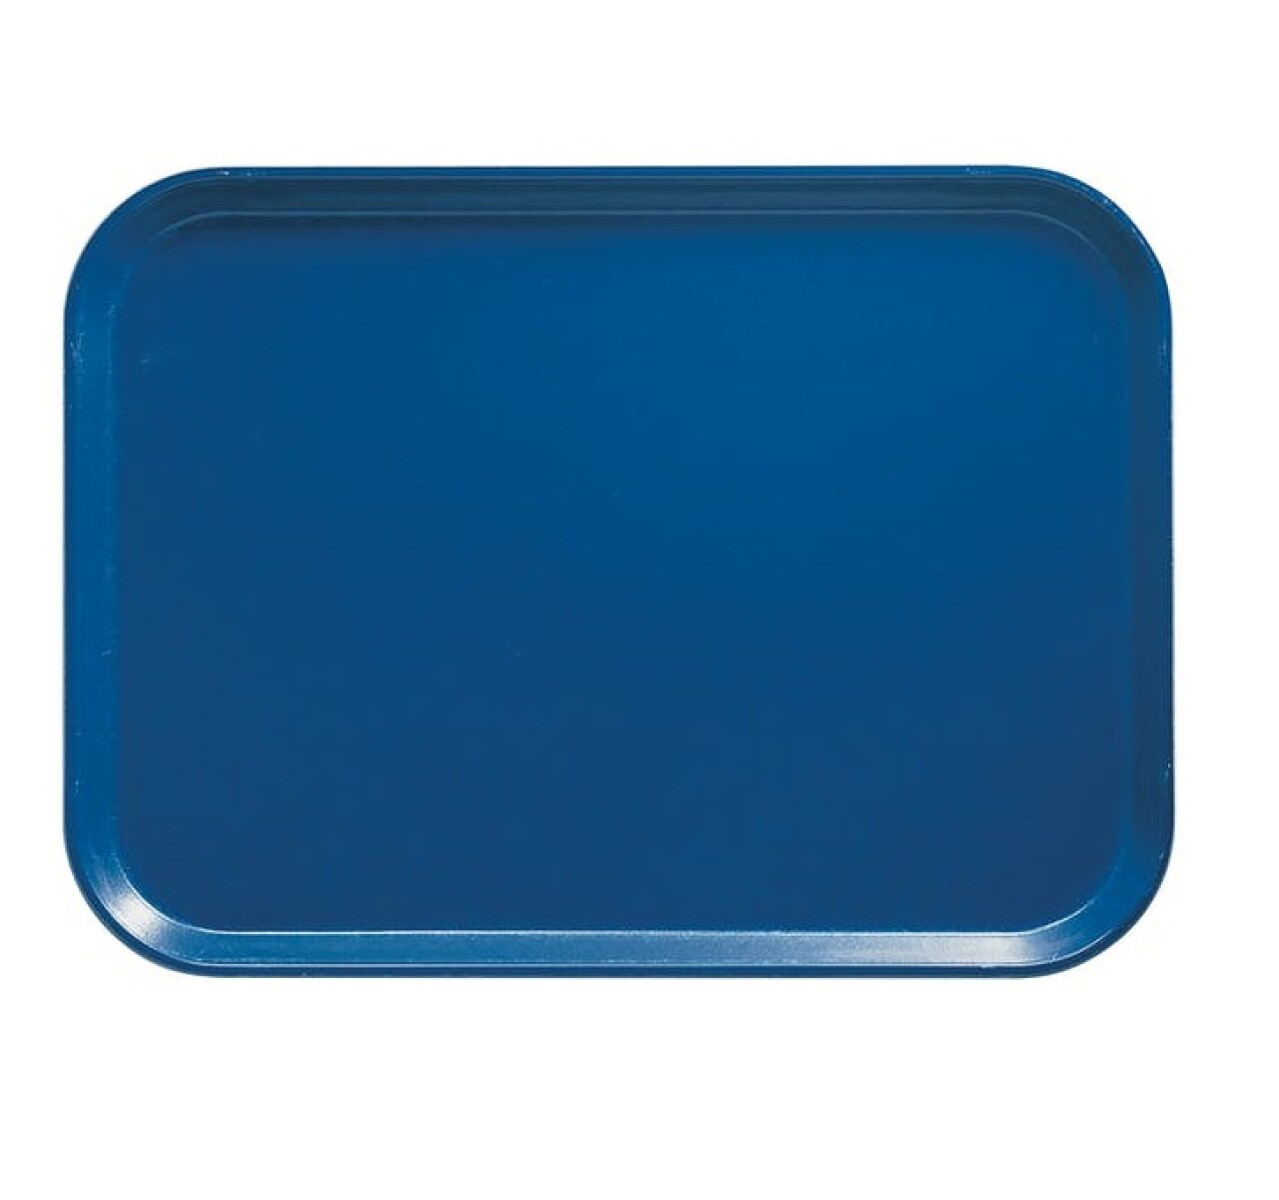 Bandeja Autoservicio Plástica con antideslizante 35 x 45 cm - Azul 